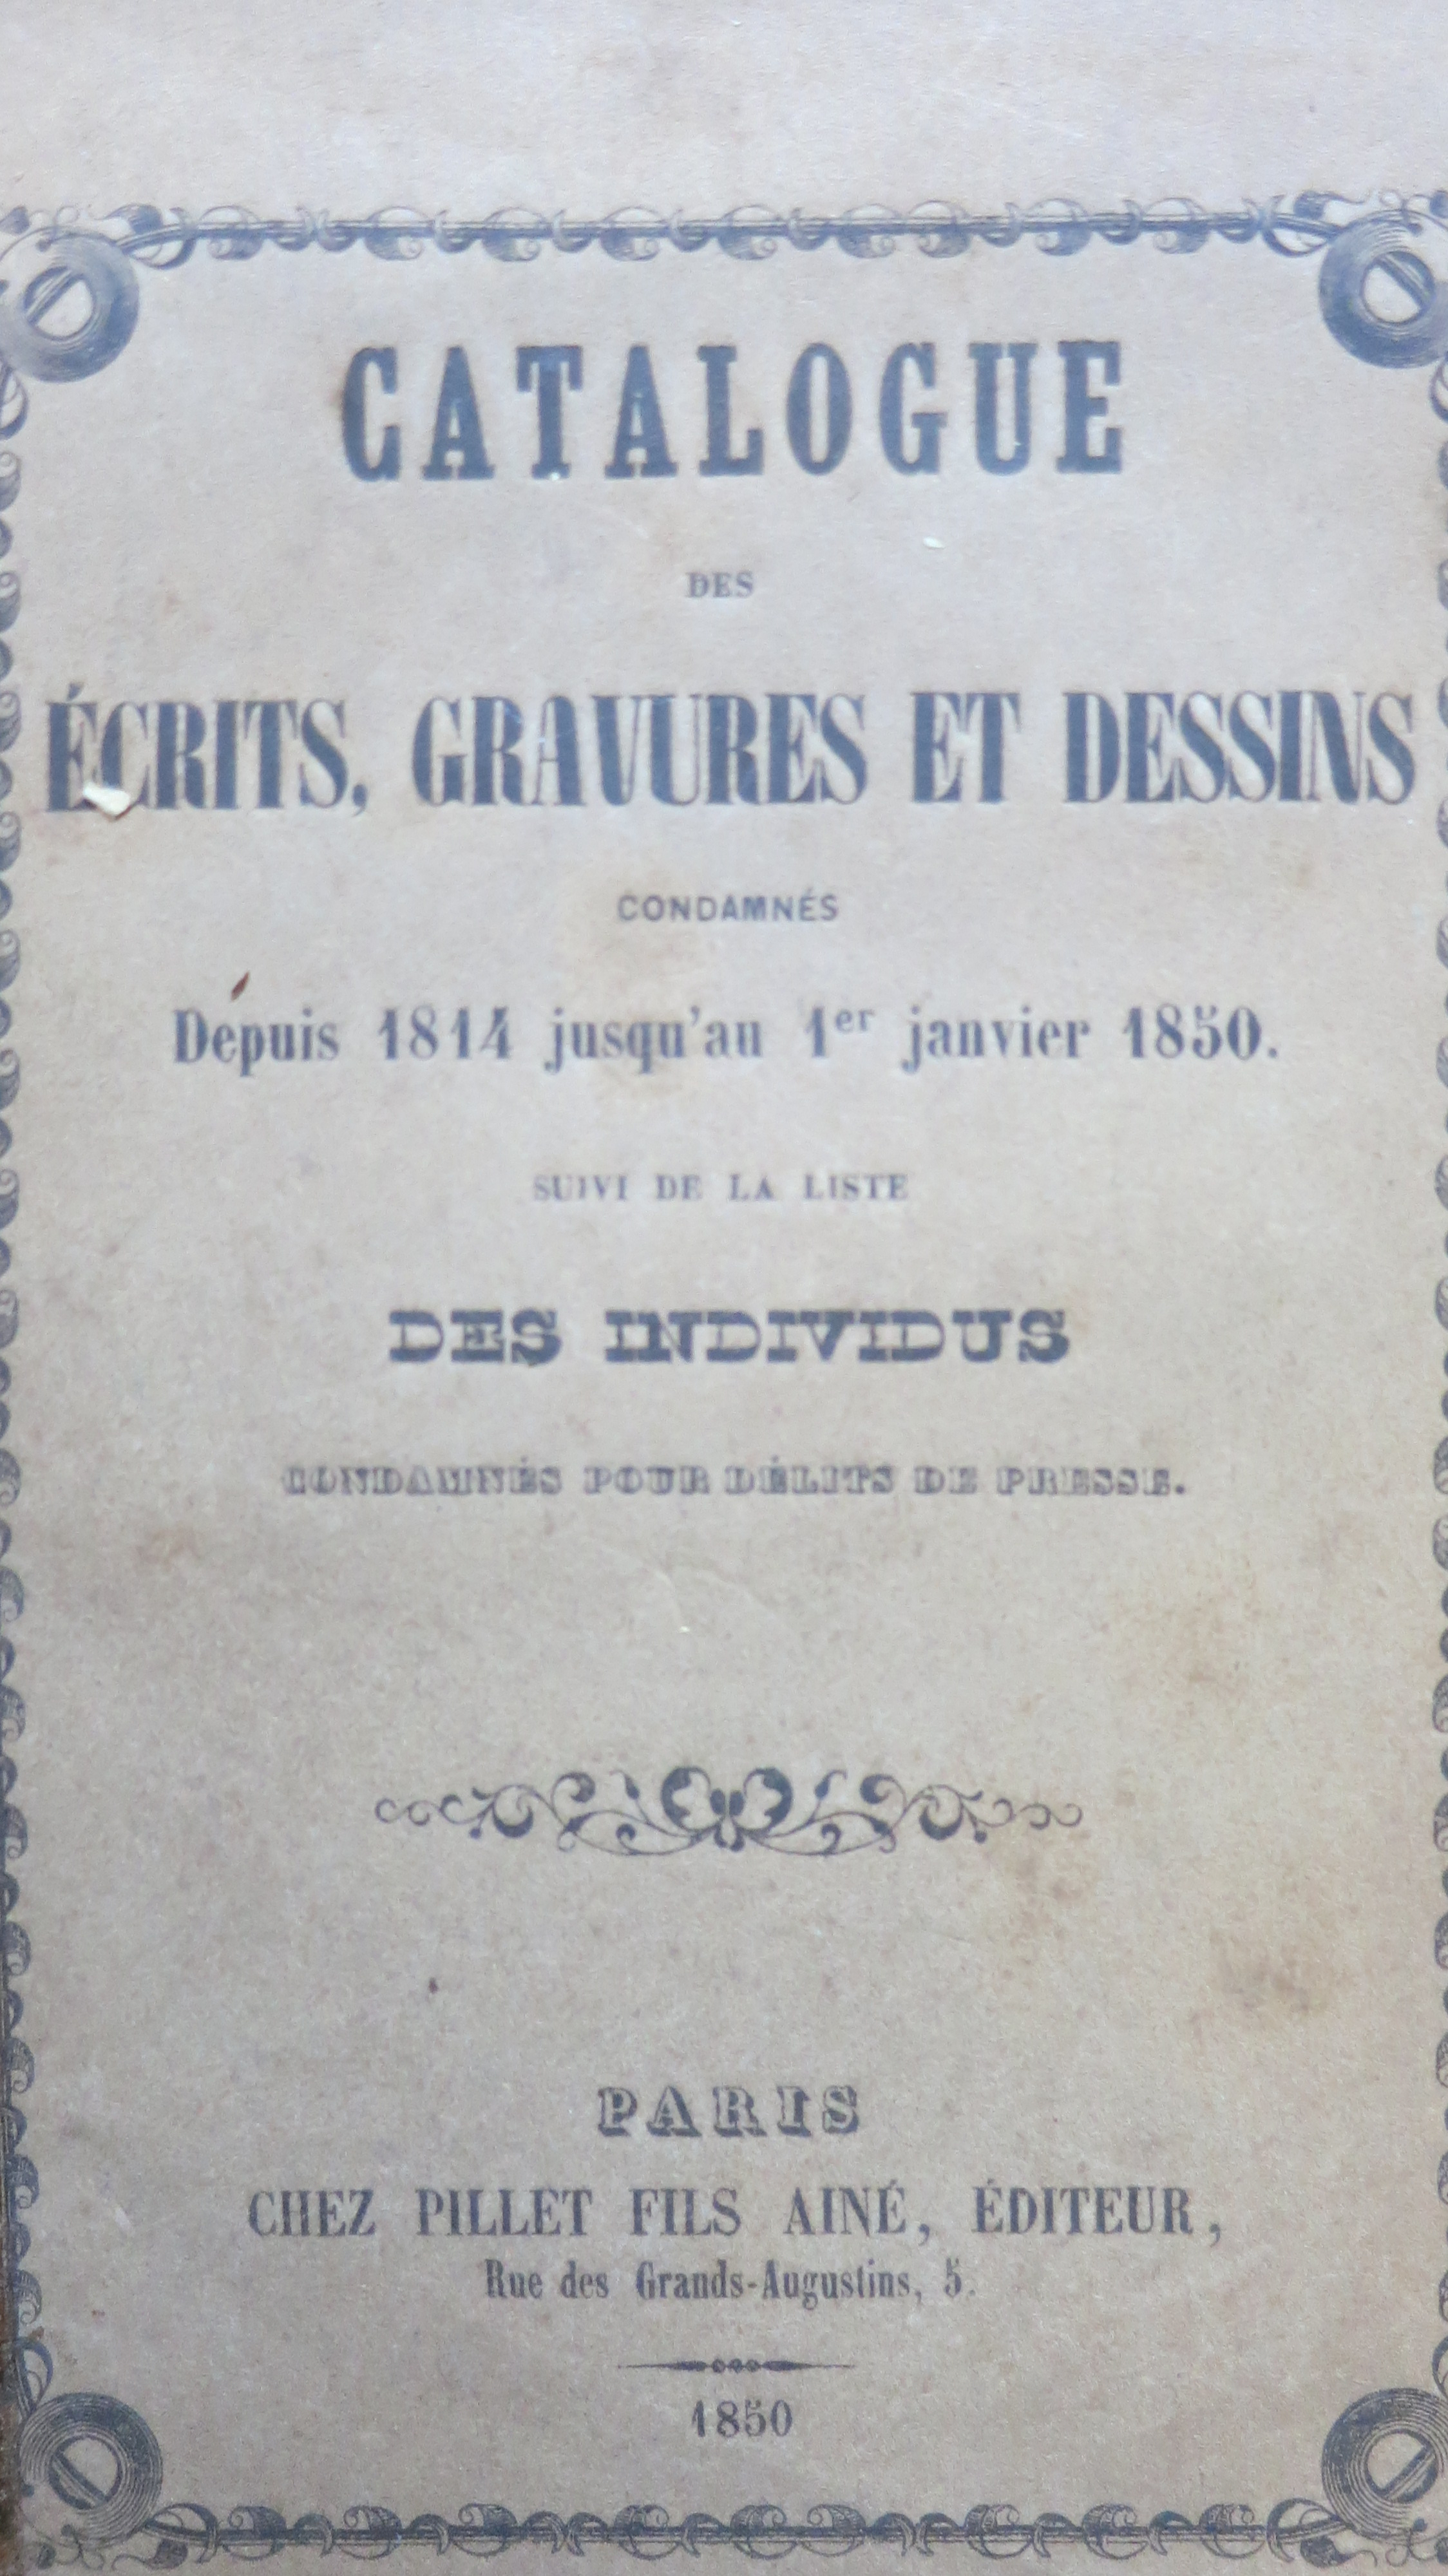 Catalogues des Ecrits, Gravures et Dessins condamnés depuis 1814 jusqu'au 1er janvier 1850